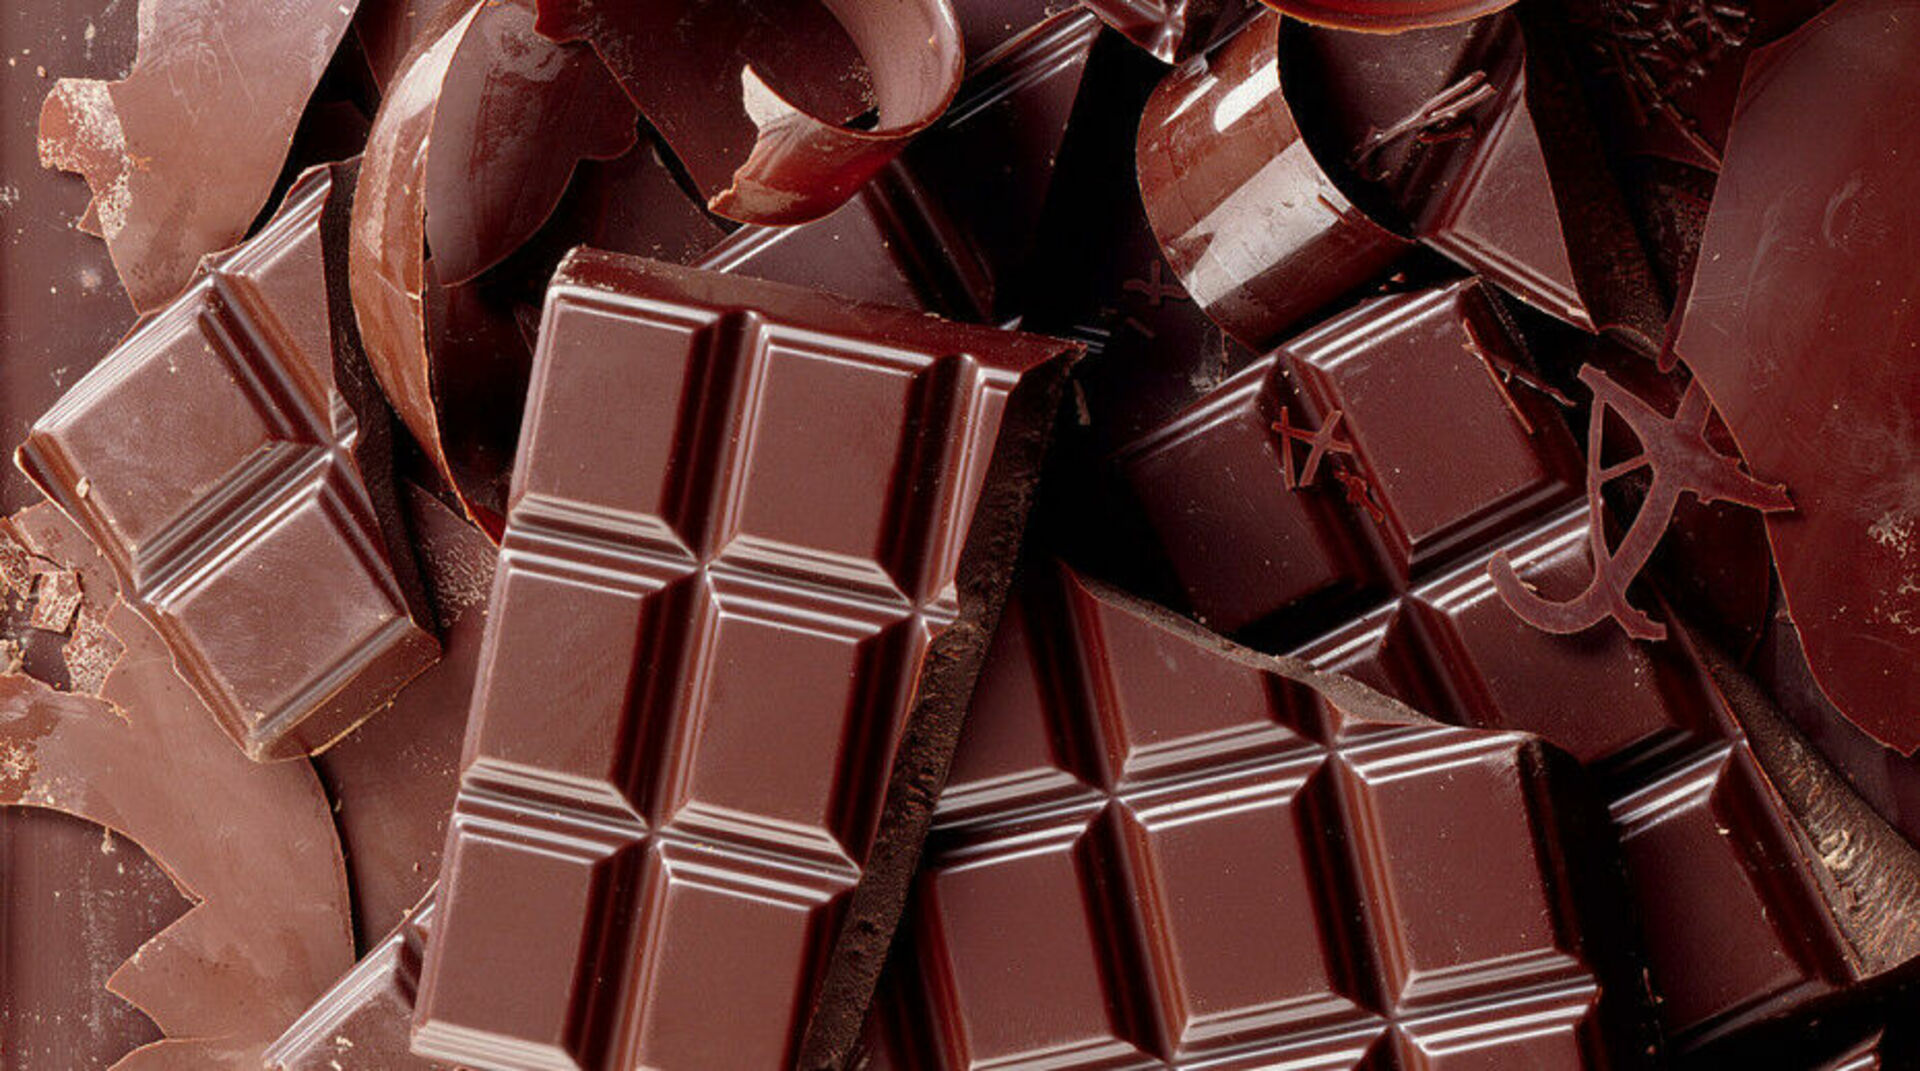 Шоколад черкесск. Шоколад. Плитка шоколада. Красивый шоколад. Красивые шоколадные плитки.